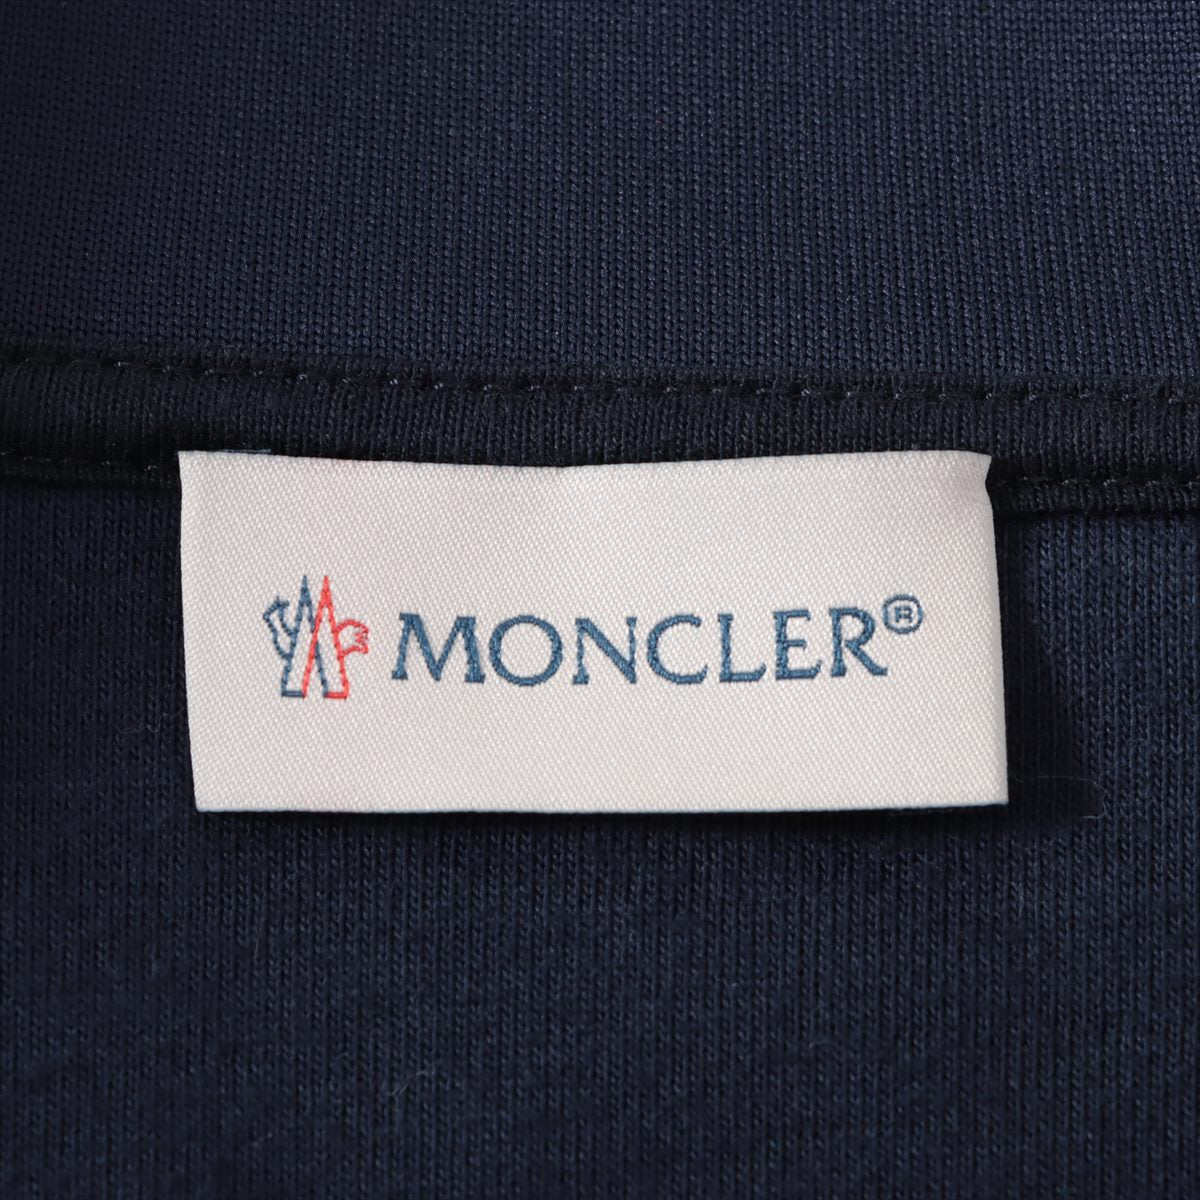 Moncler 17 years Cotton & nylon Sweatsuit XS Men's Navy blue  D10918420100